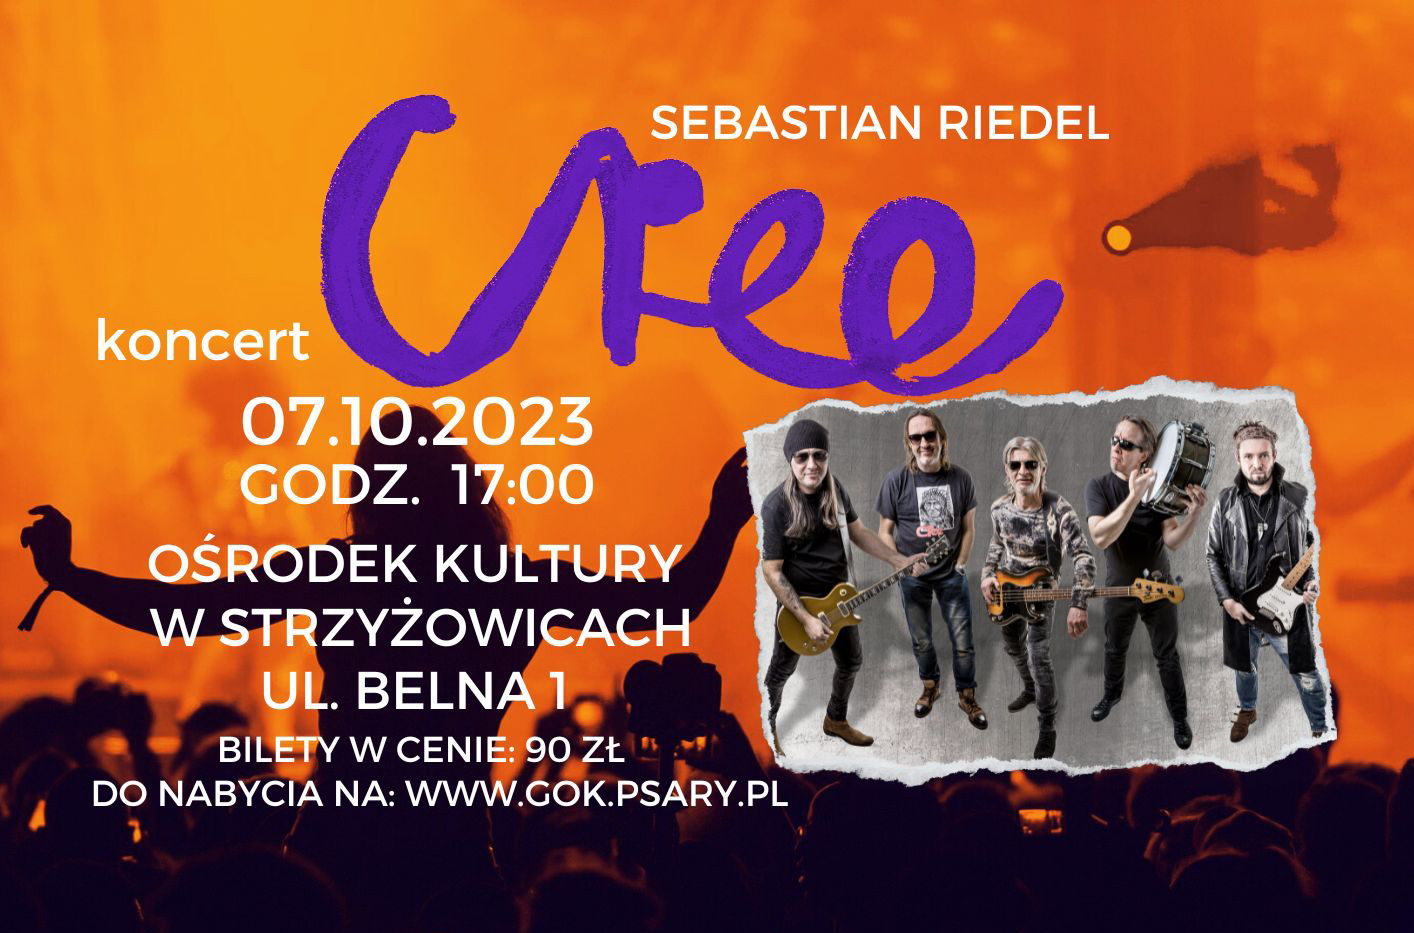 Na plakacie  widać zdjęcie zespołu Cree oraz zaproszenie na koncert, które odbędzie się 7 października o godzinie 17:00 w Ośrodku Kultury w Strzyżowicach.